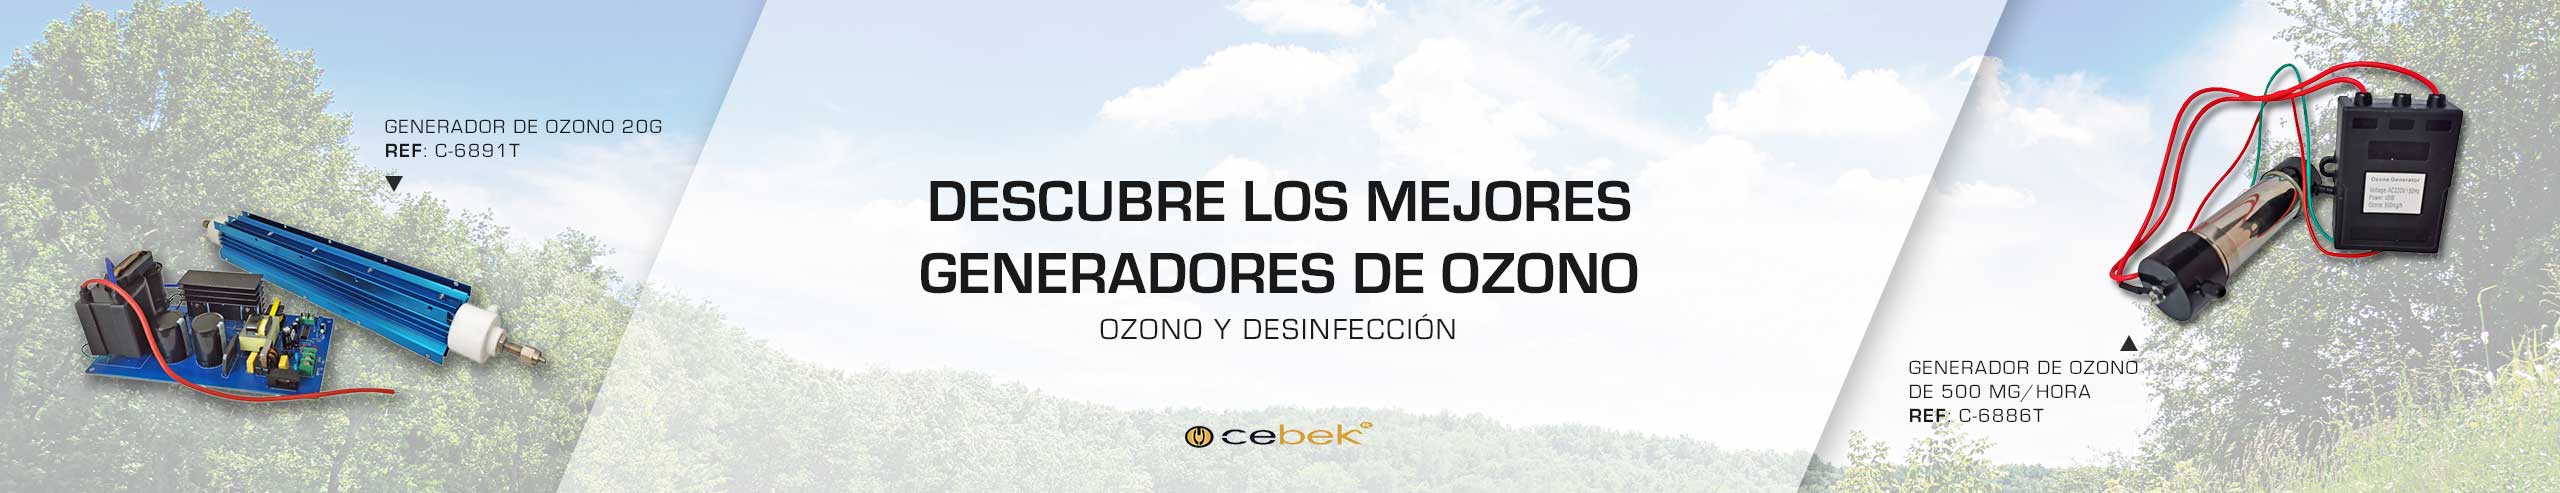 GENERADOR DE OZONO  Fabricantes en Perú - Mega Ozono SAC